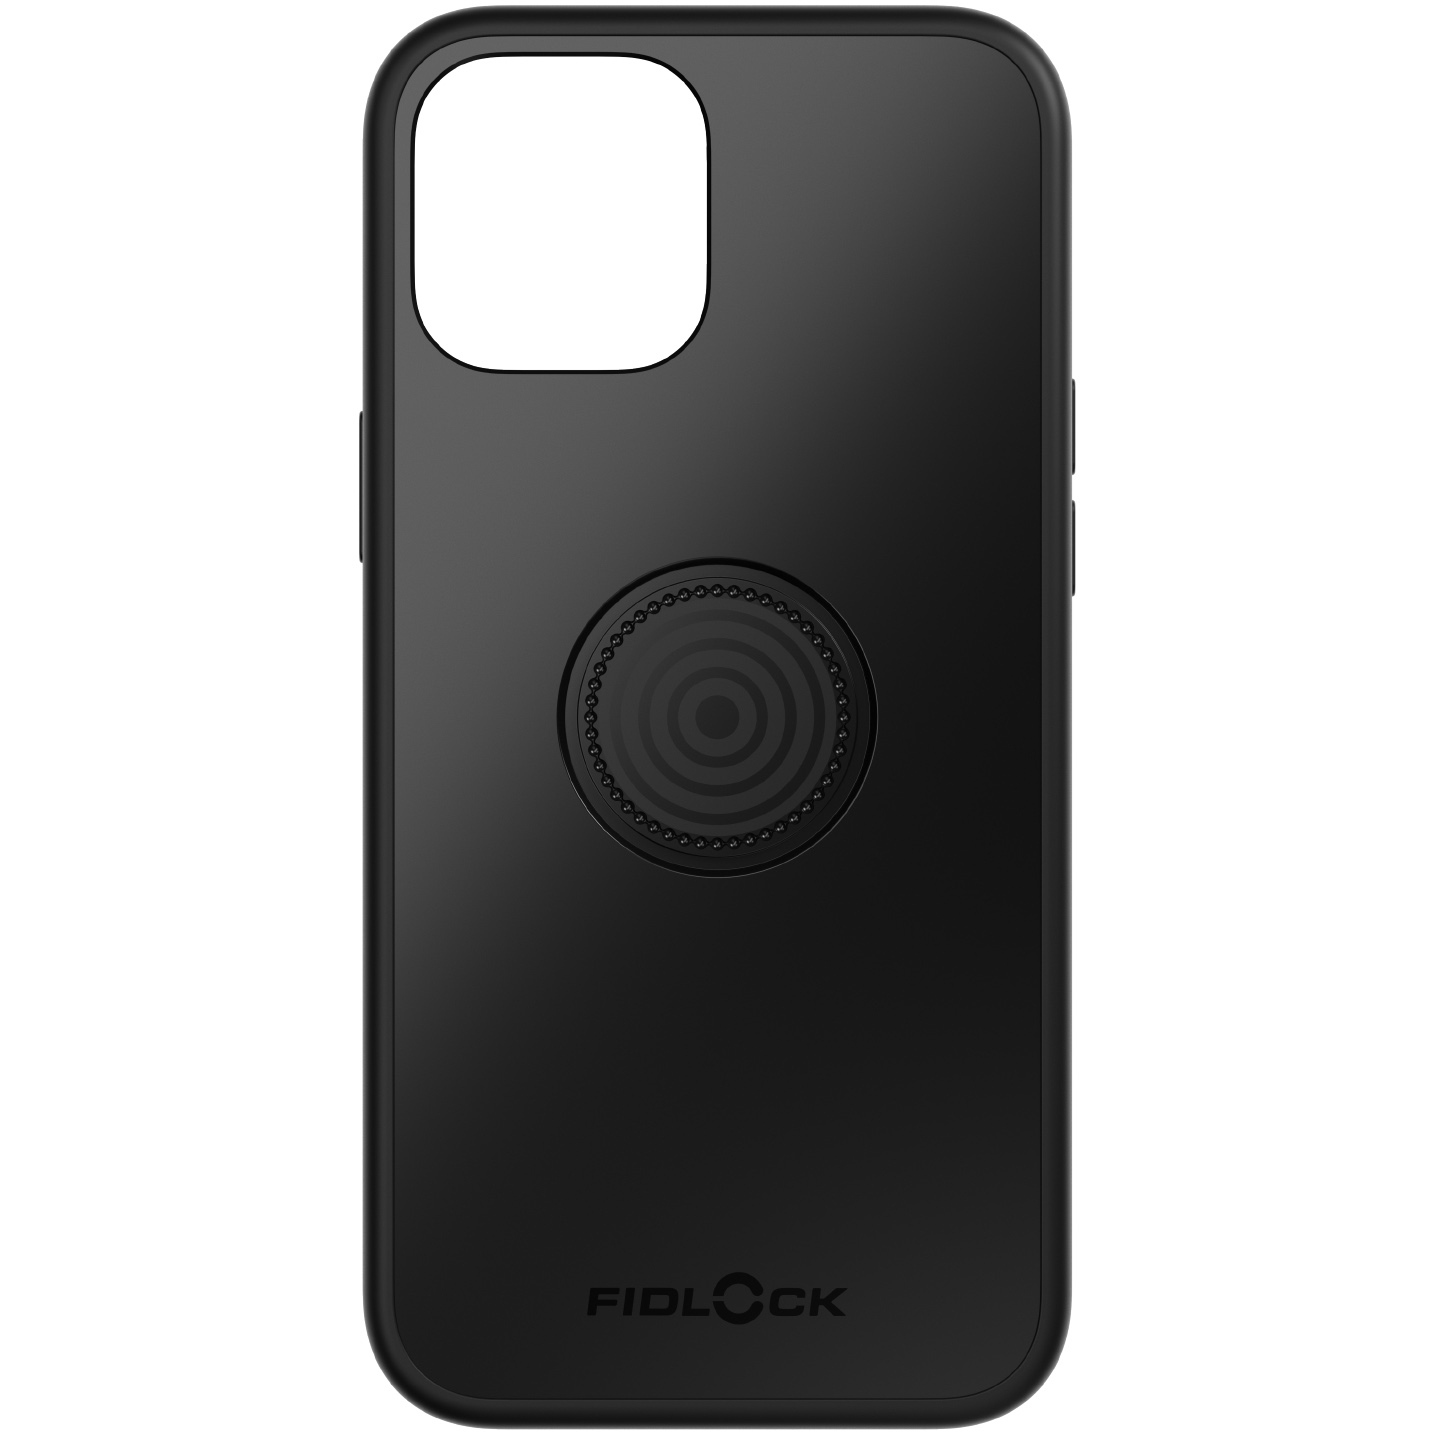 Produktbild von Fidlock Vacuum Phone Case für Apple Iphone 12 Pro Max - schwarz